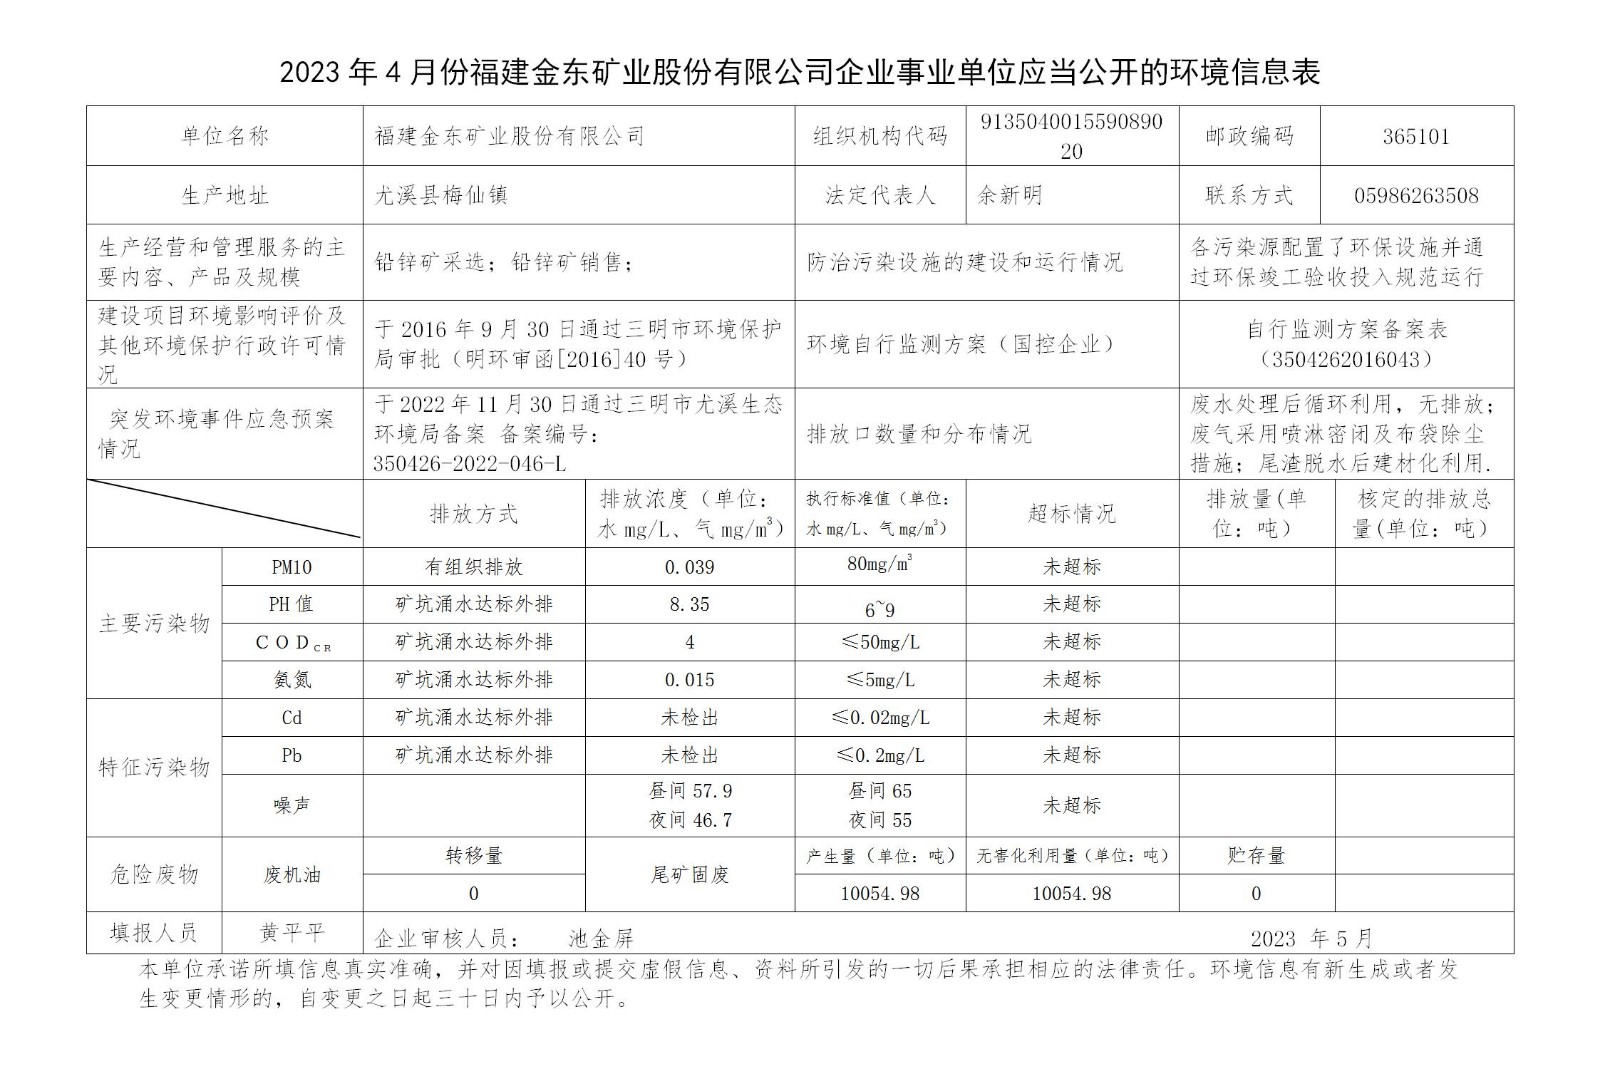 2023年4月份立博(中国)官方网站企业事业单位应当公开的环境信息表_01.jpg